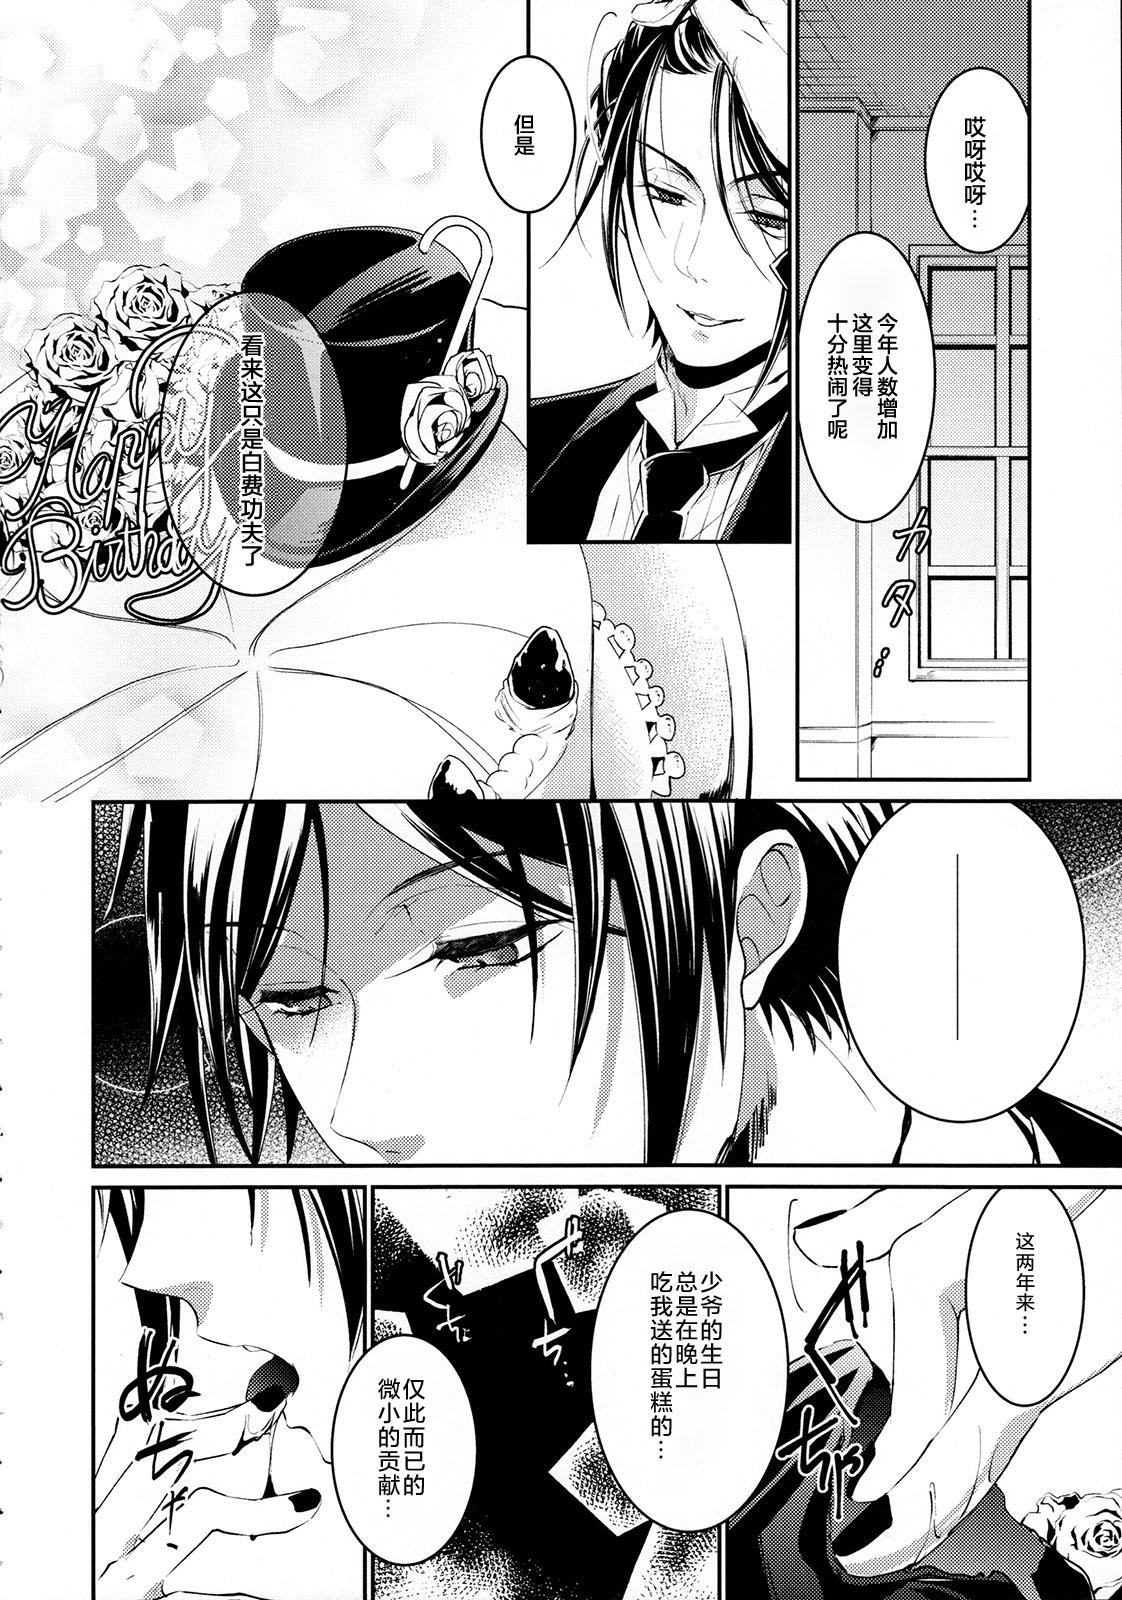 Ano Yoru no Mori - Black butler Anal - Page 4